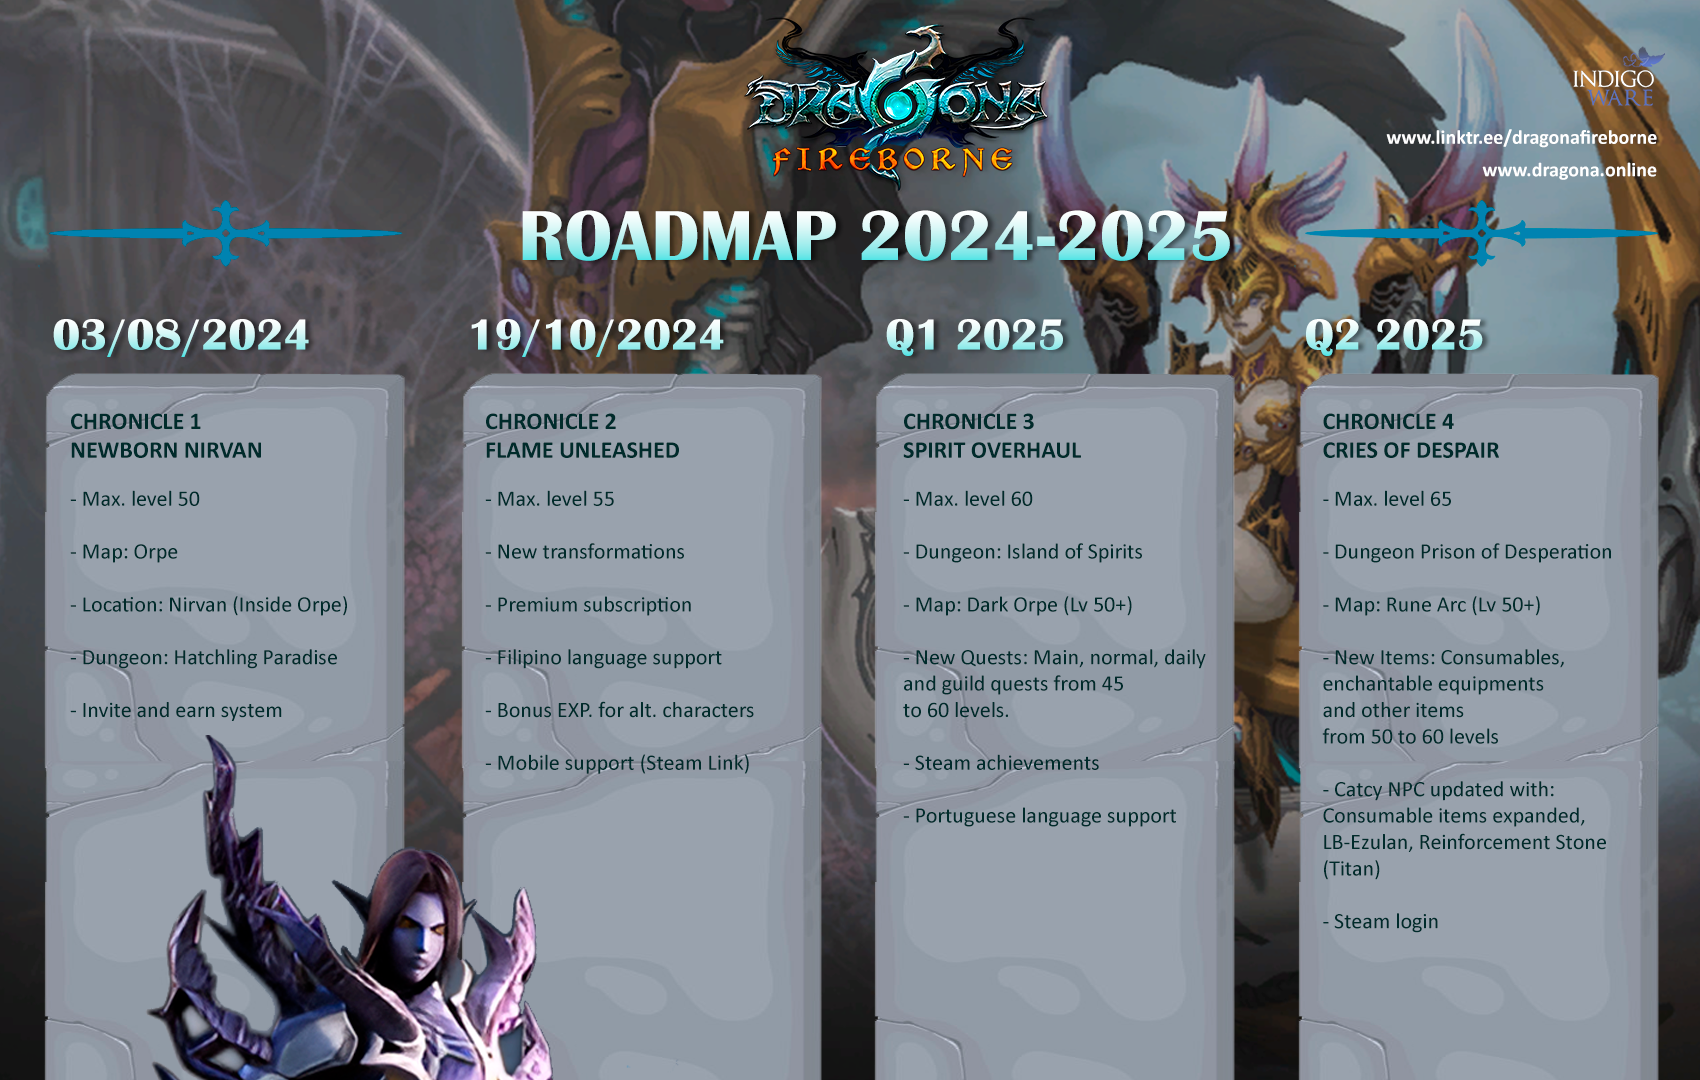 Roadmap 2024-2025